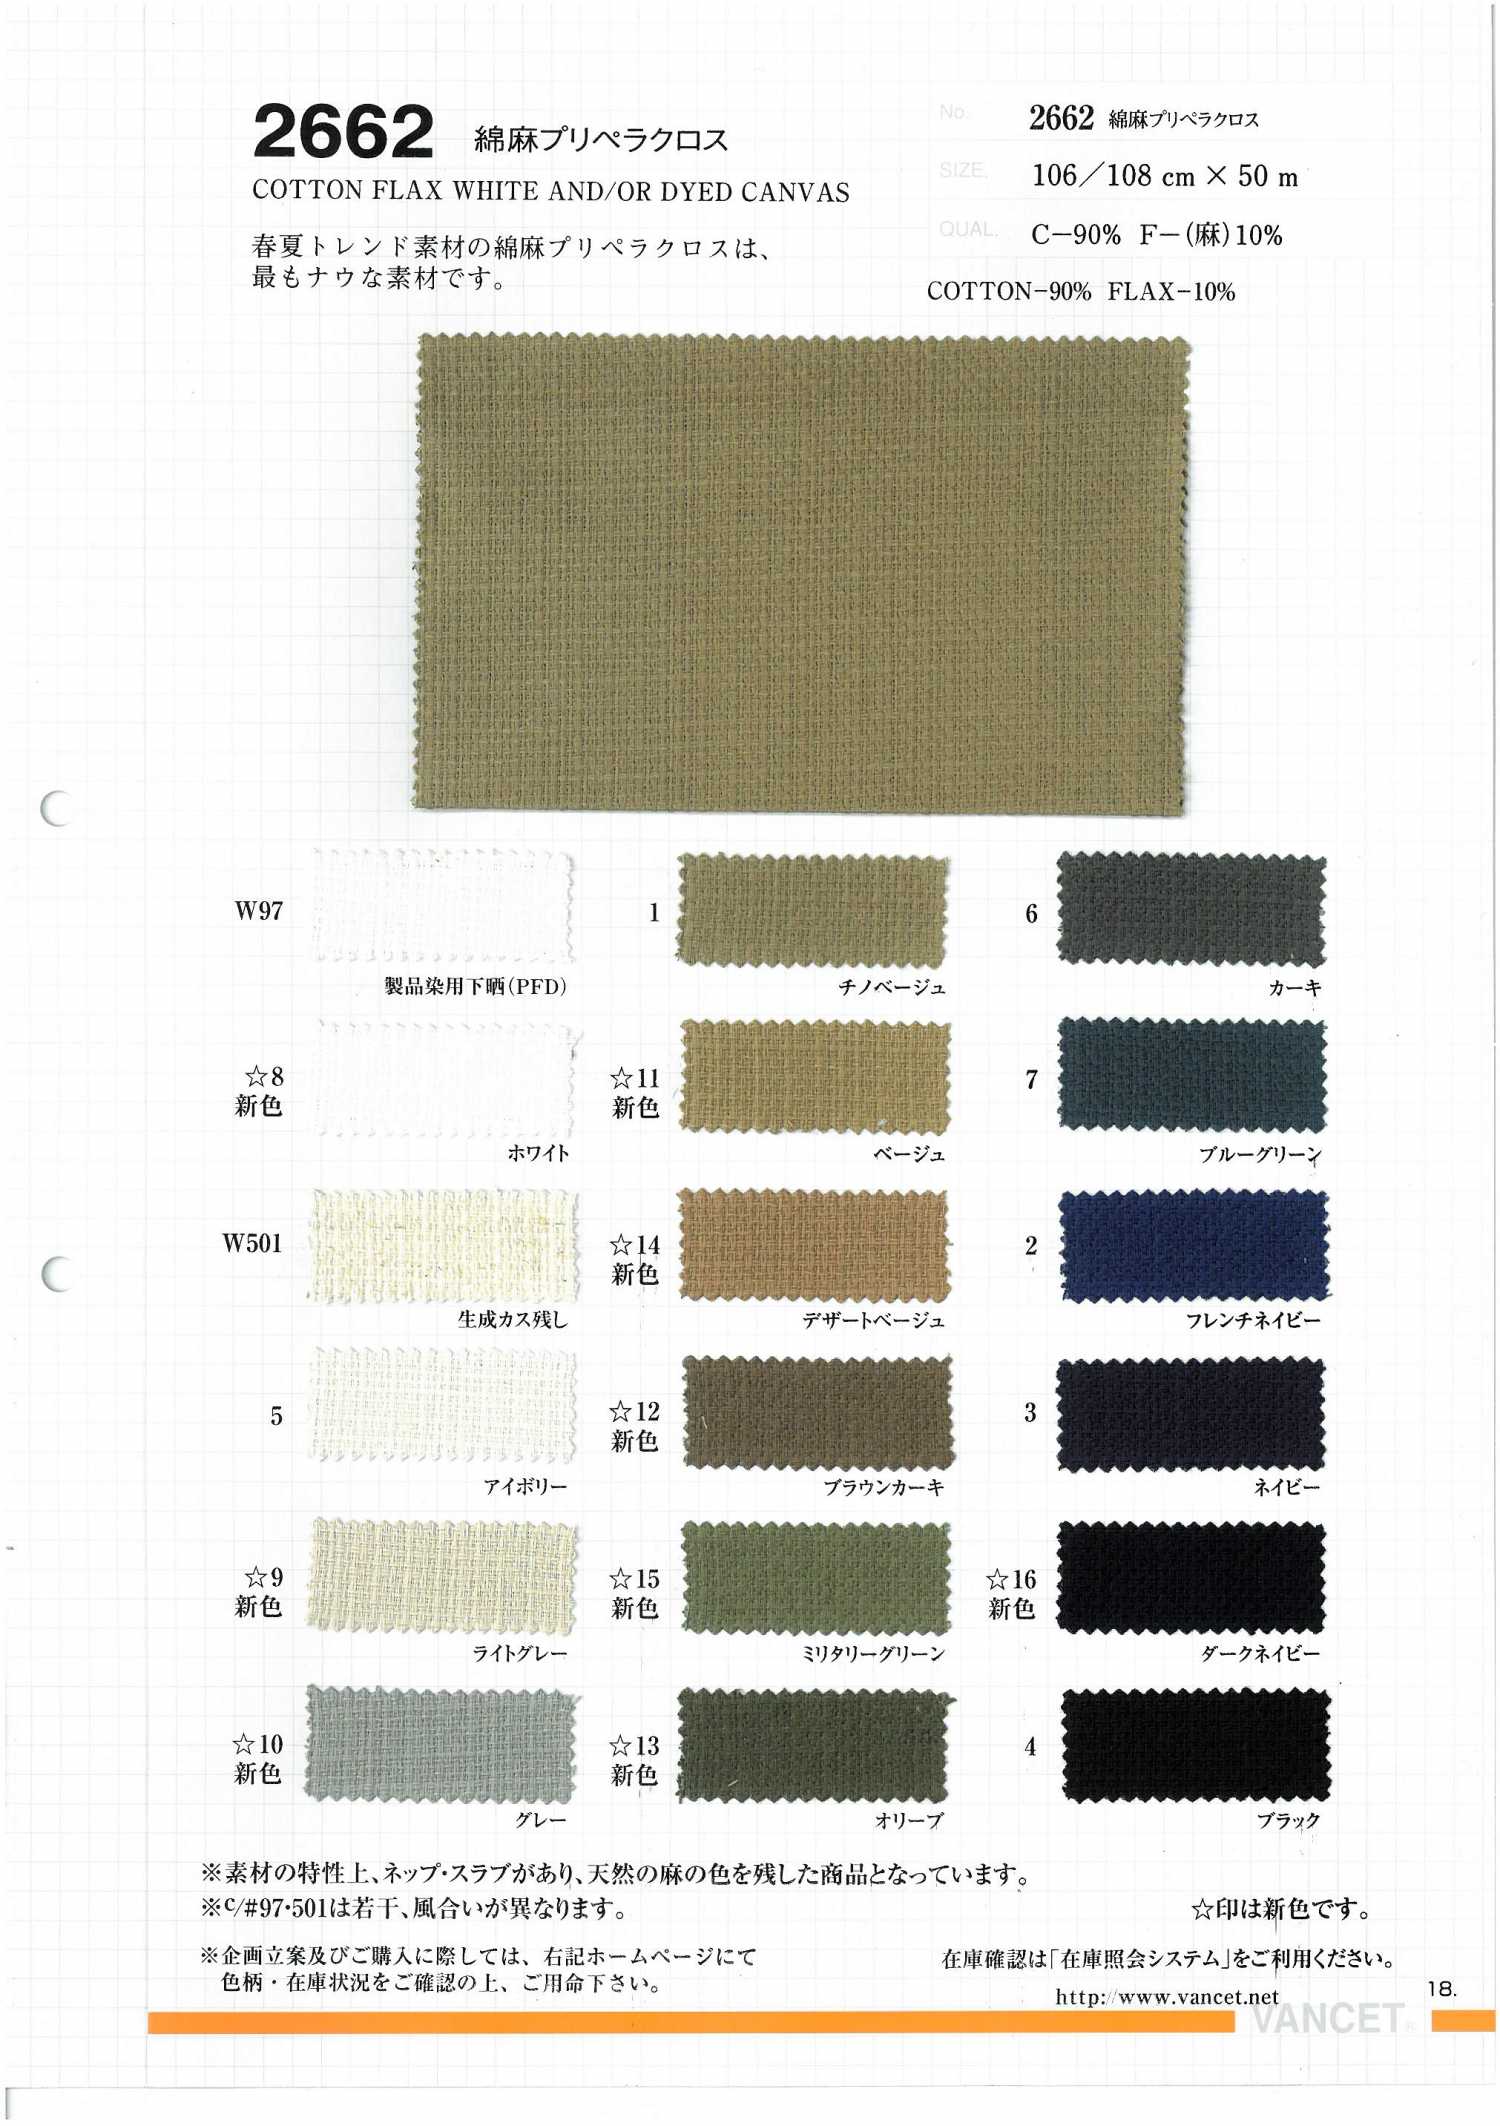 2662 Tissu De Lin De Chanvre De Coton[Fabrication De Textile] VANCET